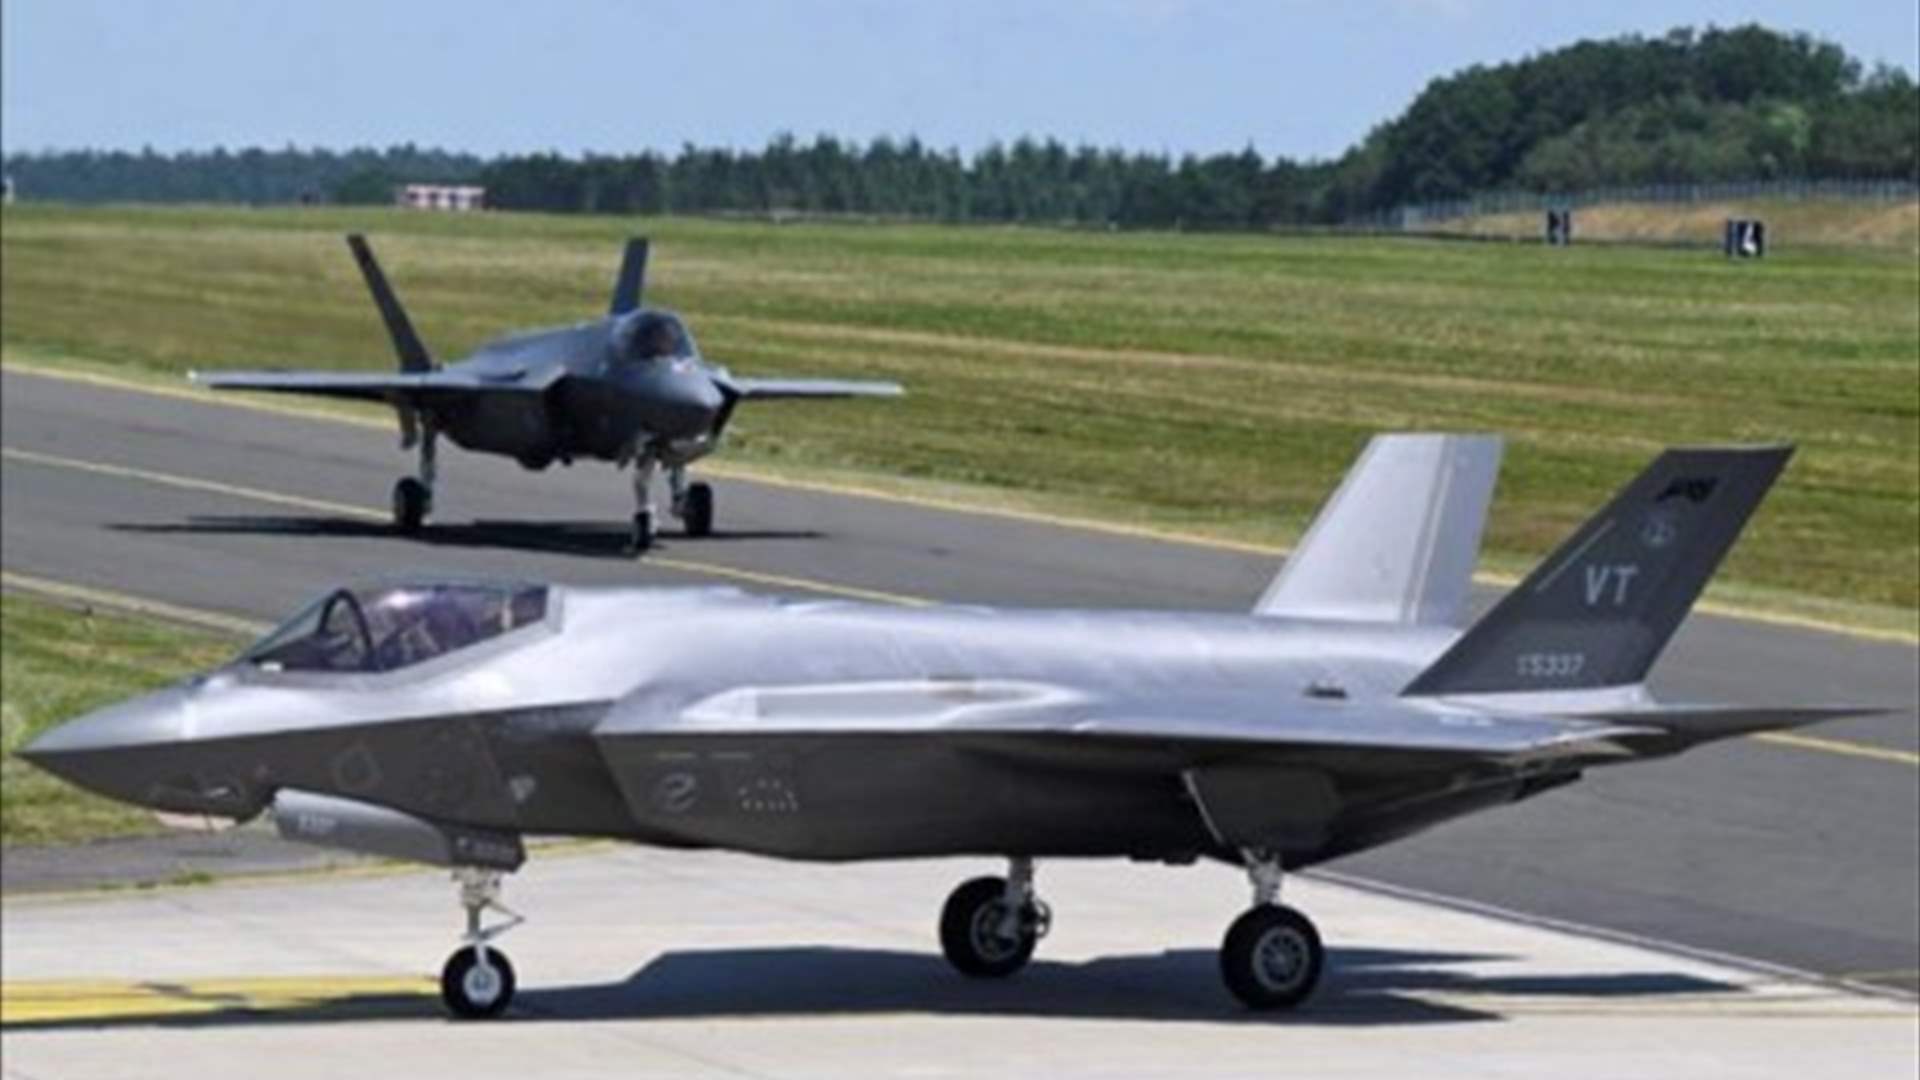 دعوى قضائية ضد هولندا لتزويد اسرائيل بقطع غيار لمقاتلات اف-35